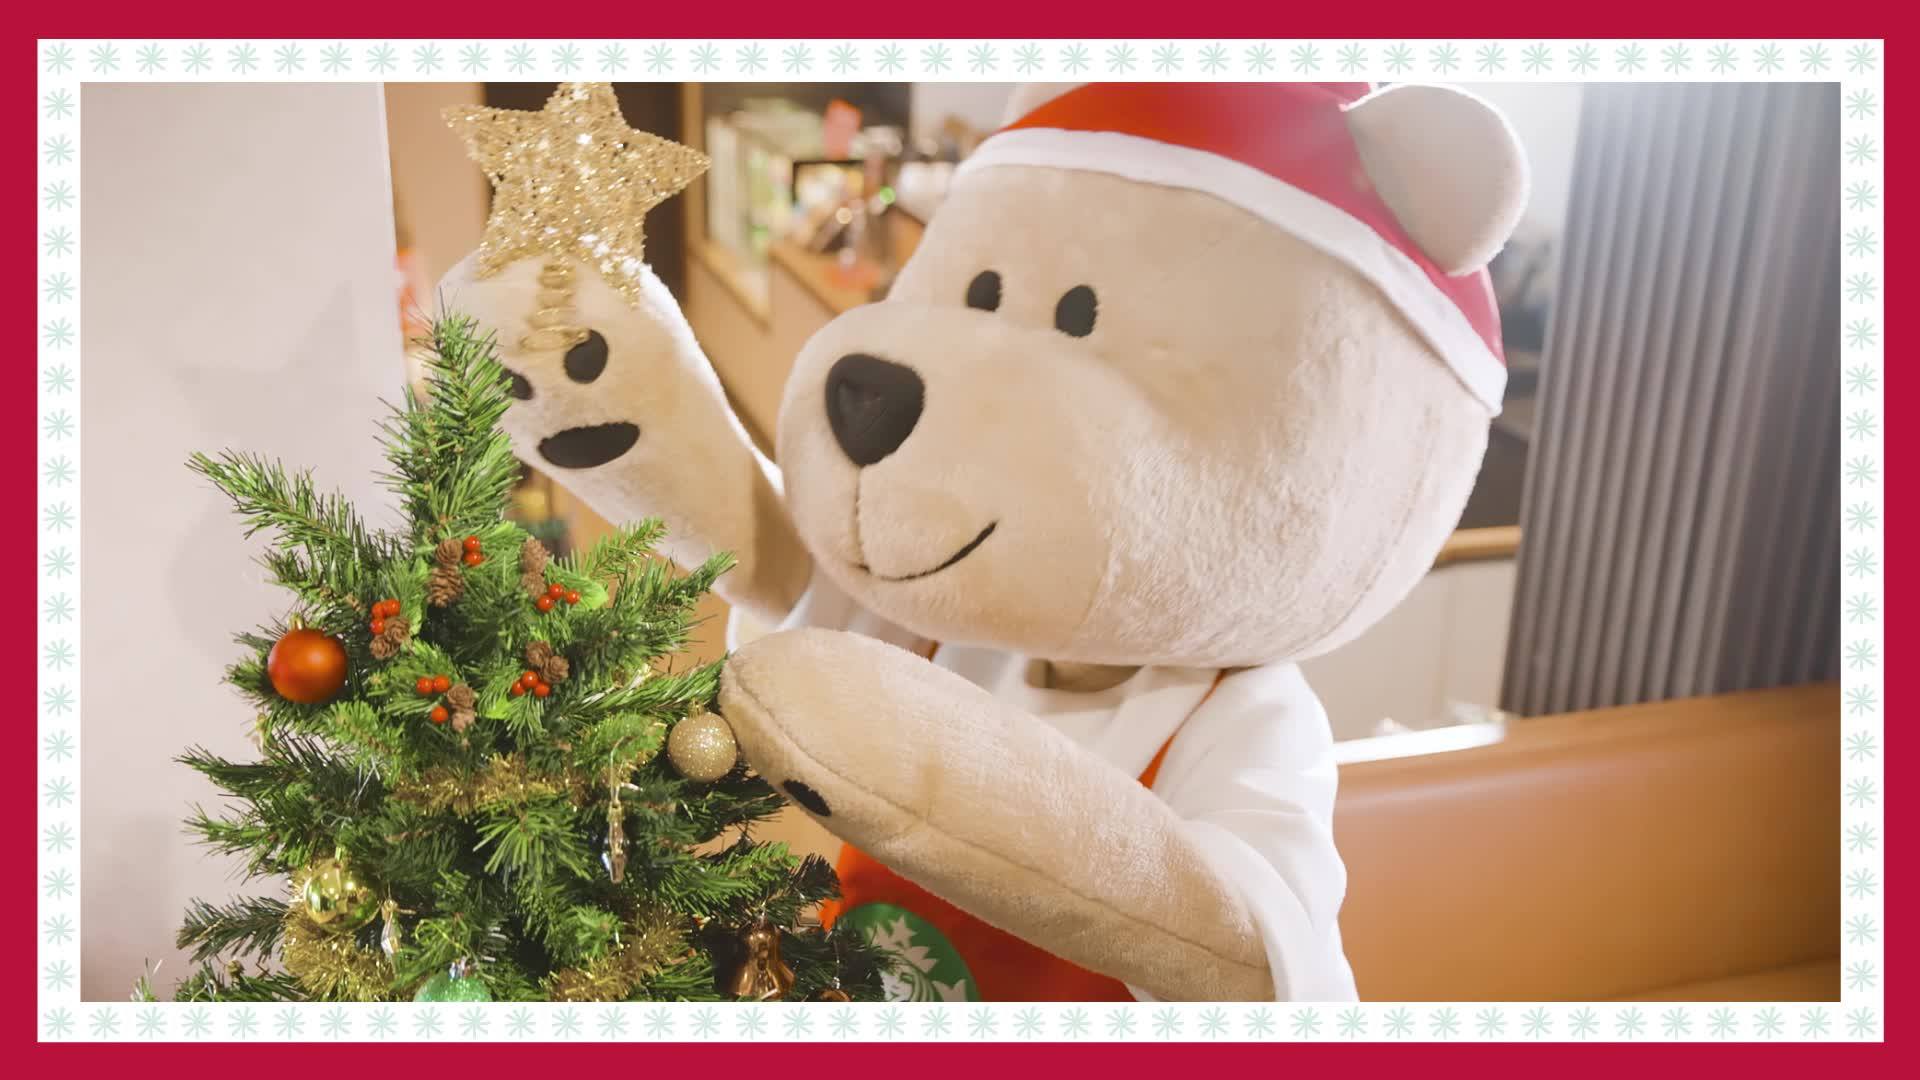 聖誕節快樂！星巴克熊爲大家送上暖心祝福。🎅🎄 #香港星巴克